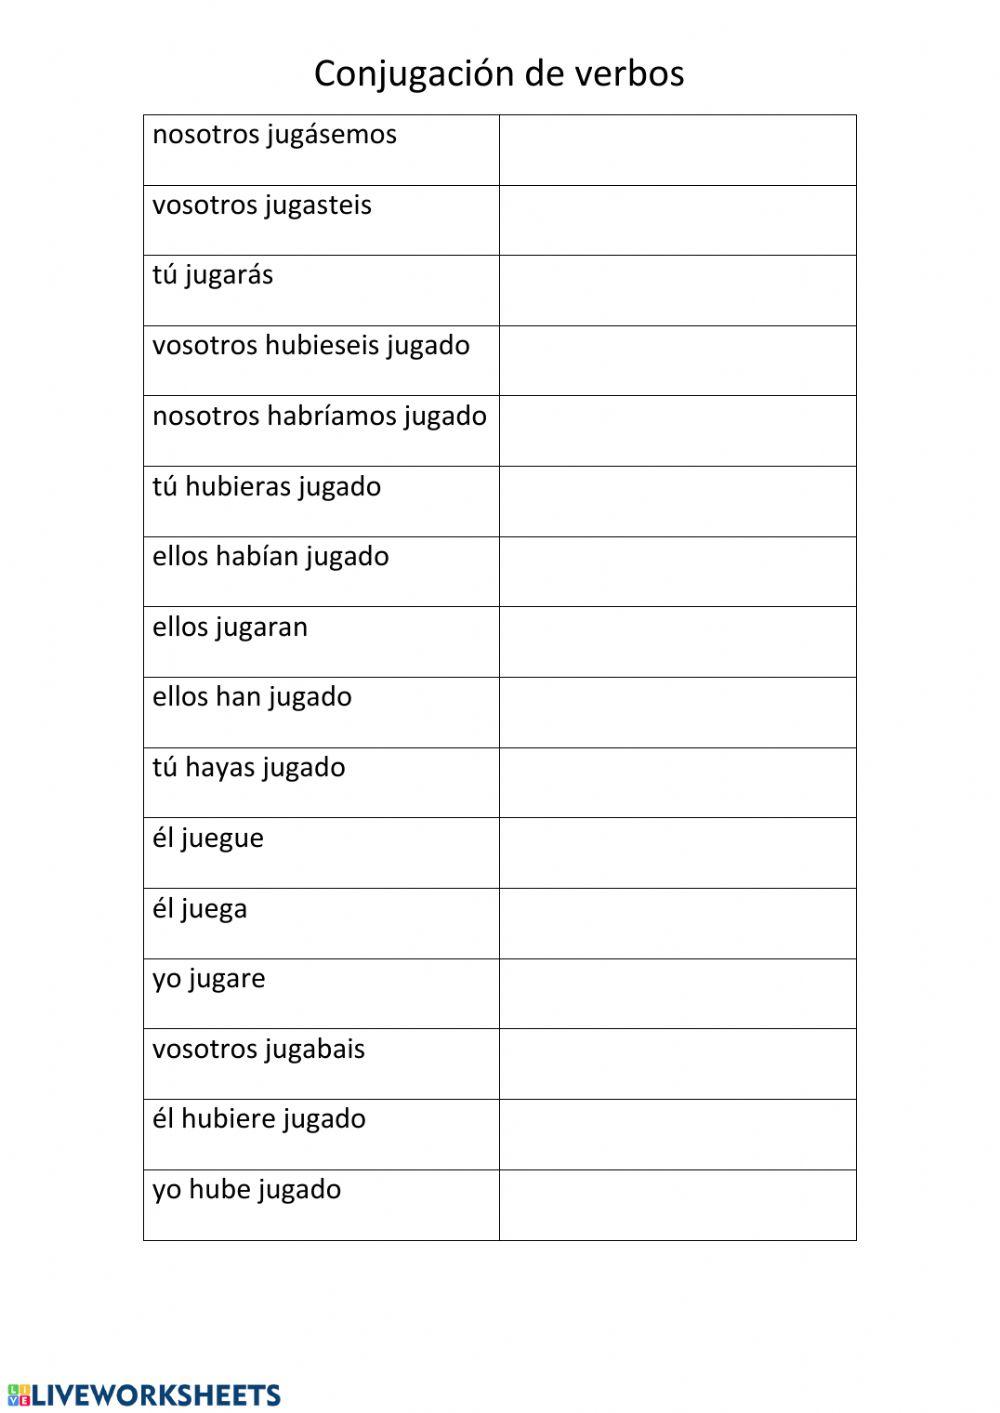 Conjugación verbos del castellano